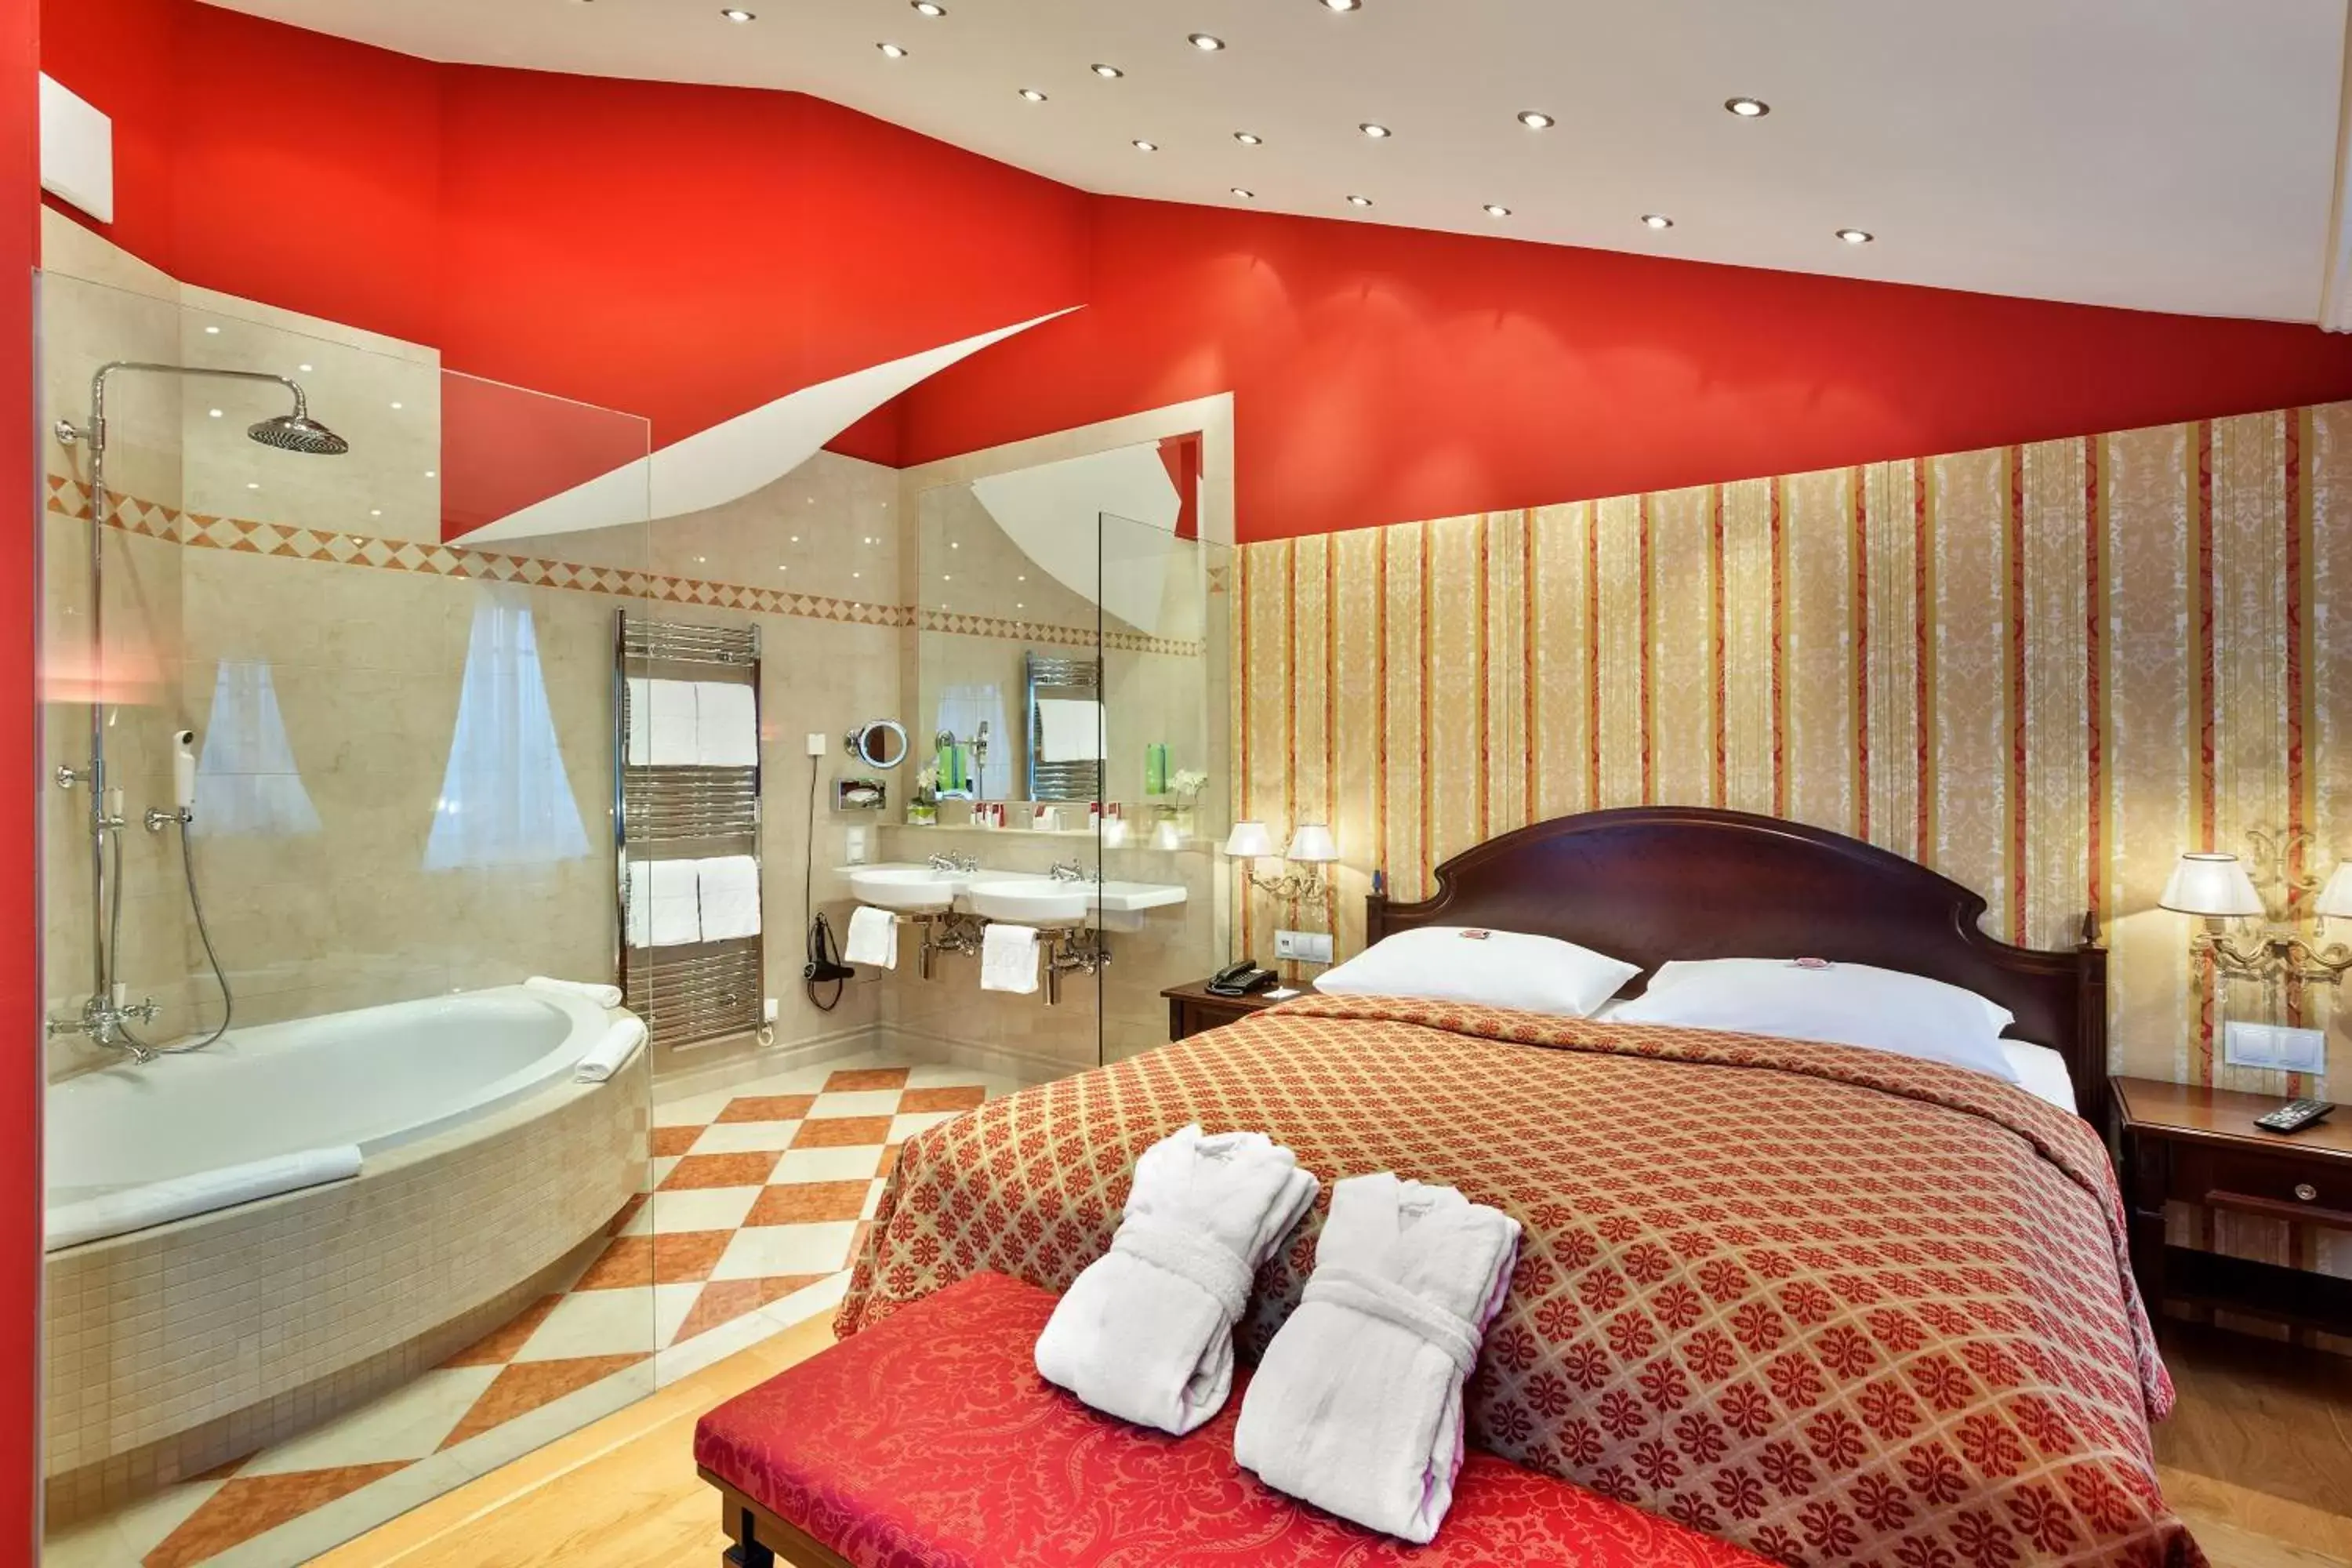 Shower, Bed in Austria Trend Hotel Ananas Wien